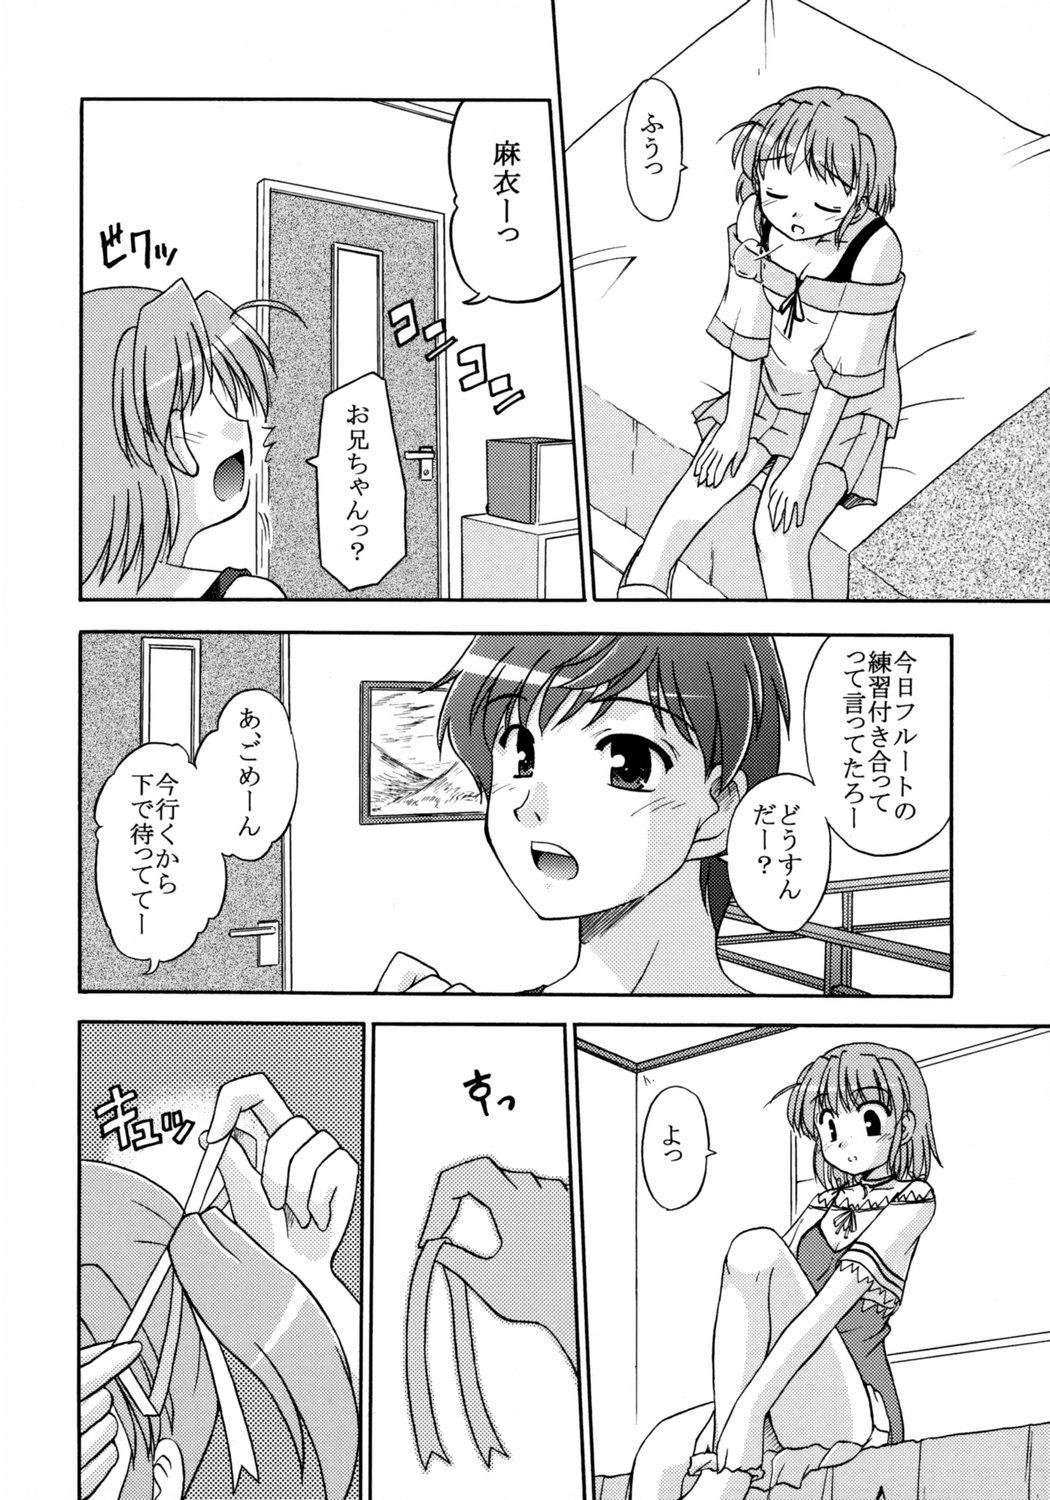 Foreplay Sekai de Ichiban Sukina Hito - Yoake mae yori ruriiro na Gay Outdoor - Page 6